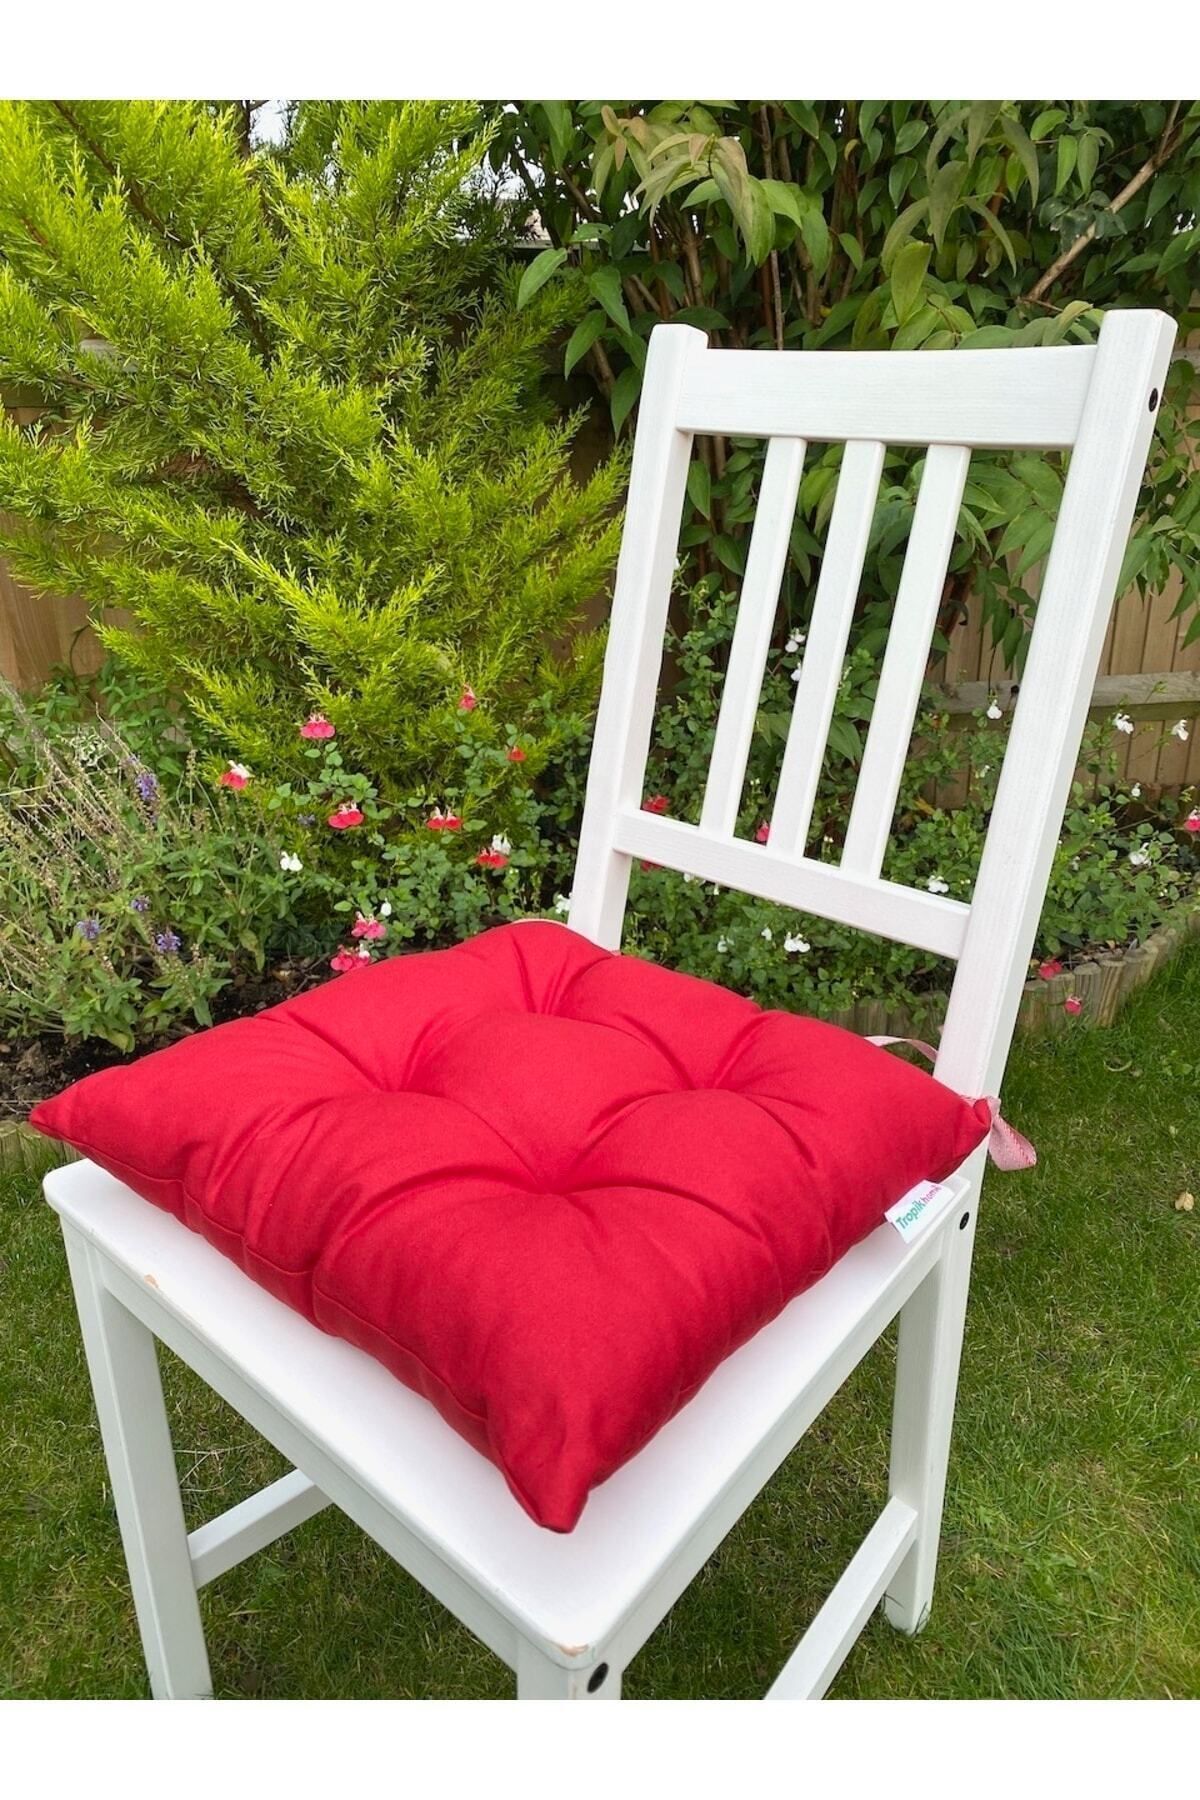 Tropikhome 6lı Kırmızı Sandalye Minderi 40x40 Cm Kare Bahçe Sandalye Minderi- Kırmızı Minder